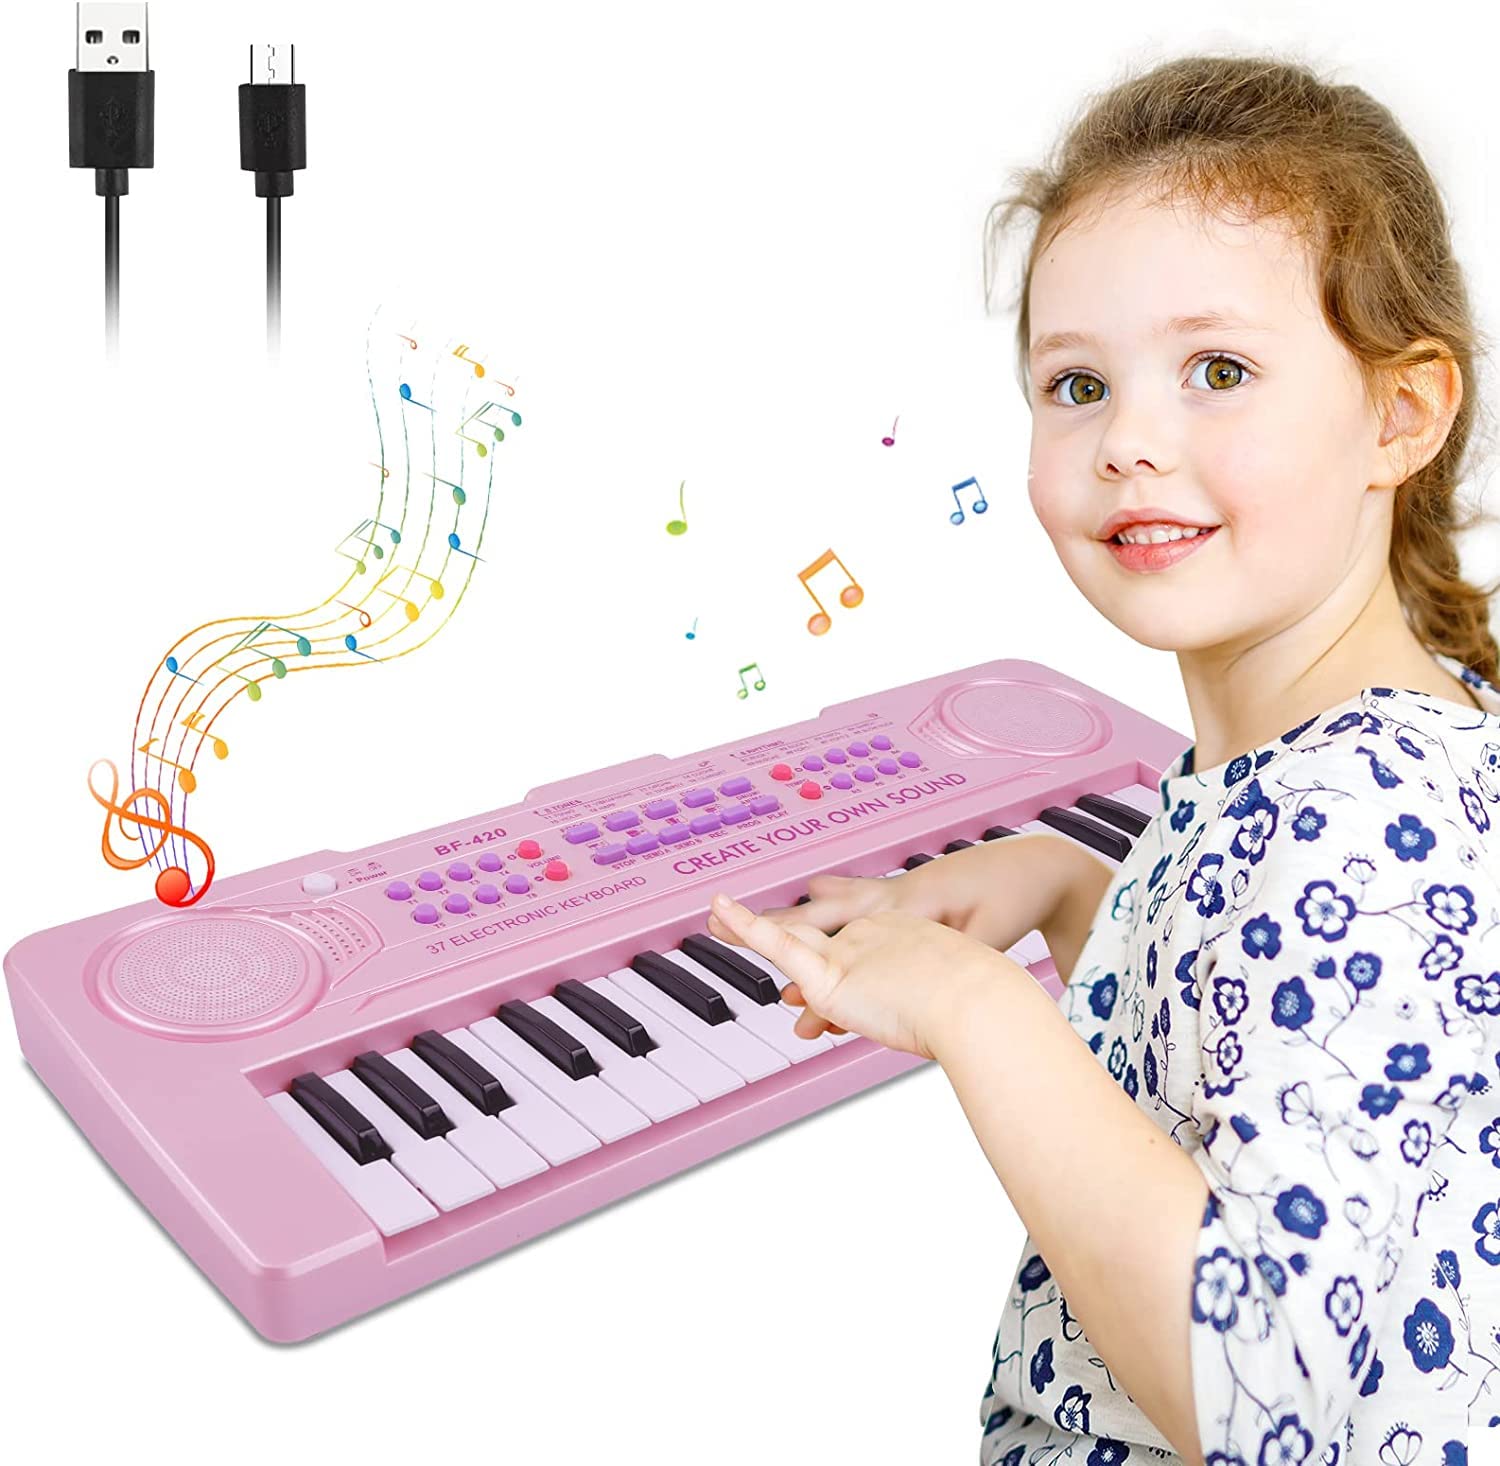 37キーピアノキーボード 子供用 音楽玩具 ピアノ 電子ピアノ 学習 教育玩具 3歳 4歳 5歳 男の子 女の子 クリスマス 誕生日プレゼント